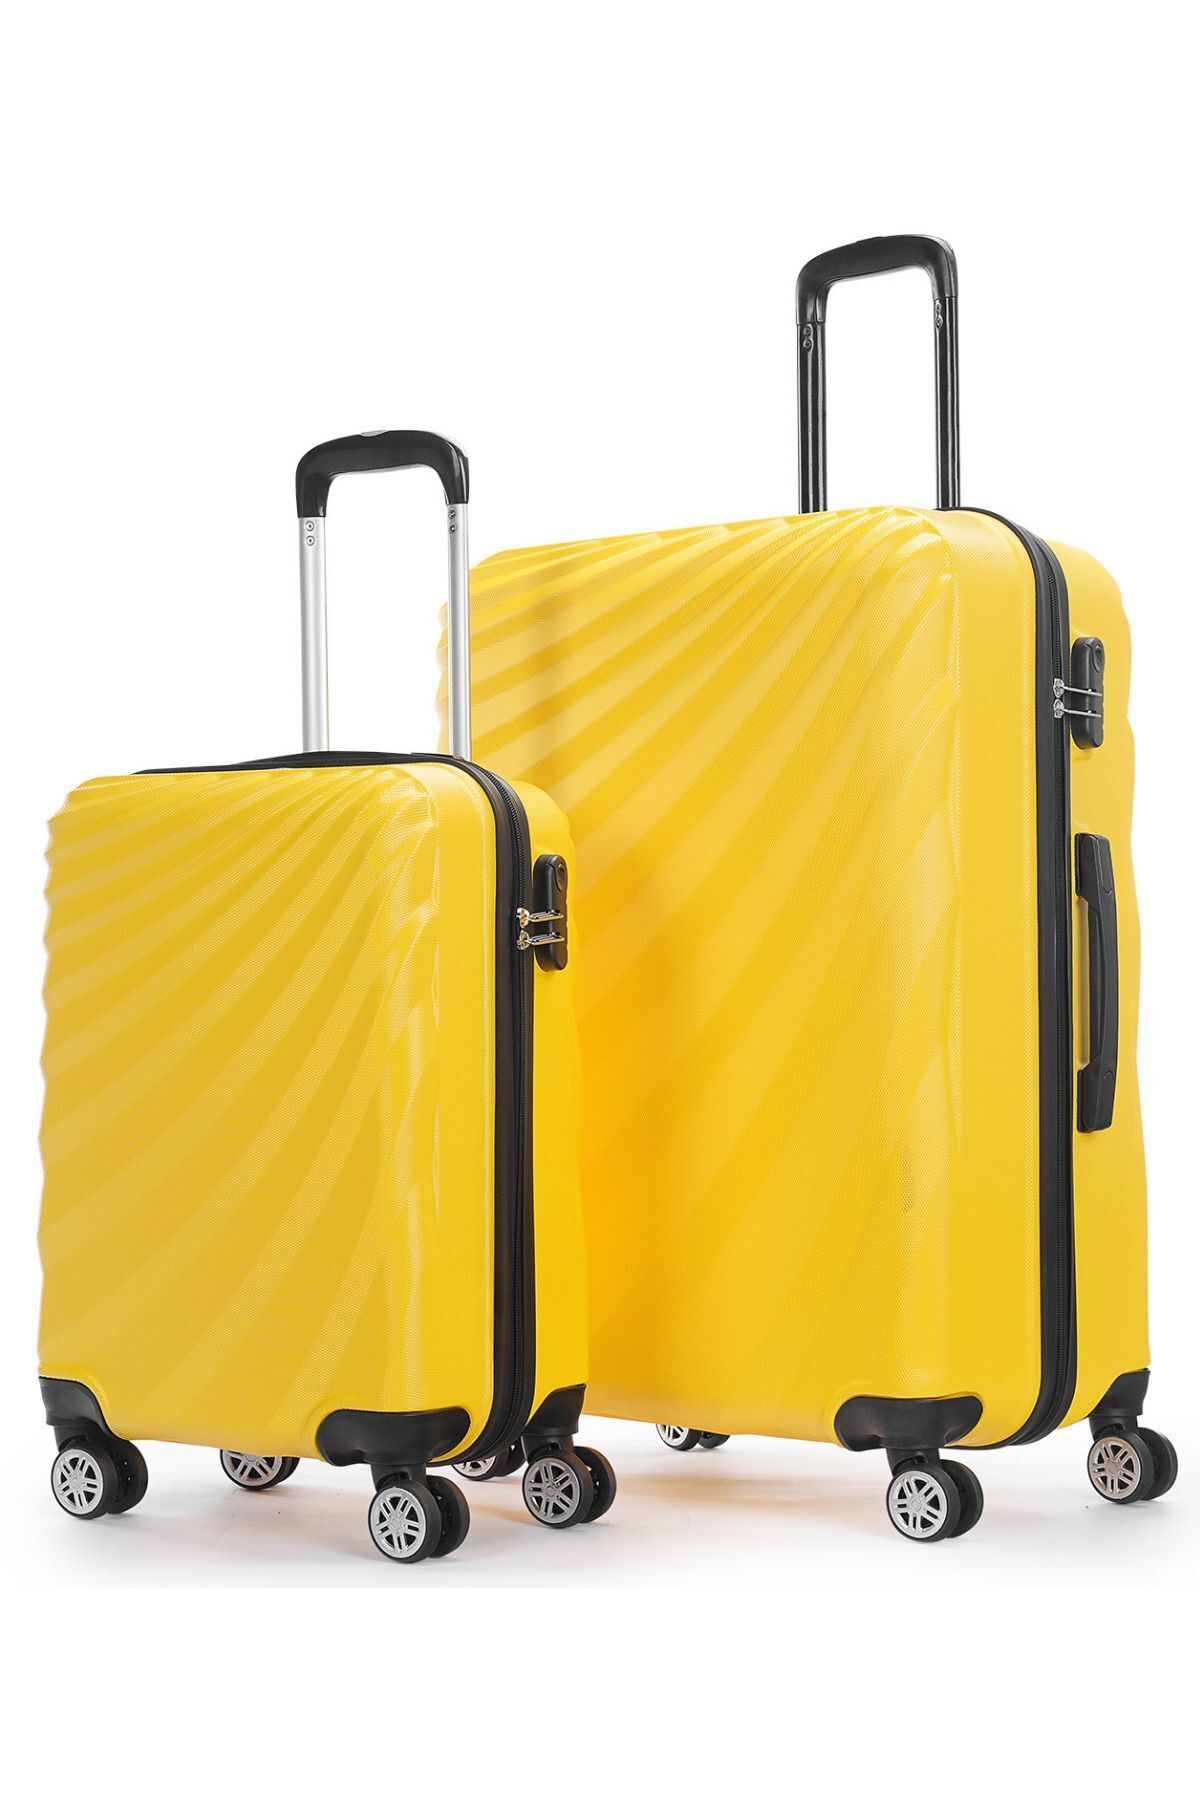 Wexta Wx-300 Sarı Büyük&kabin 2'li Set Valiz/ Seyahat Bavulu